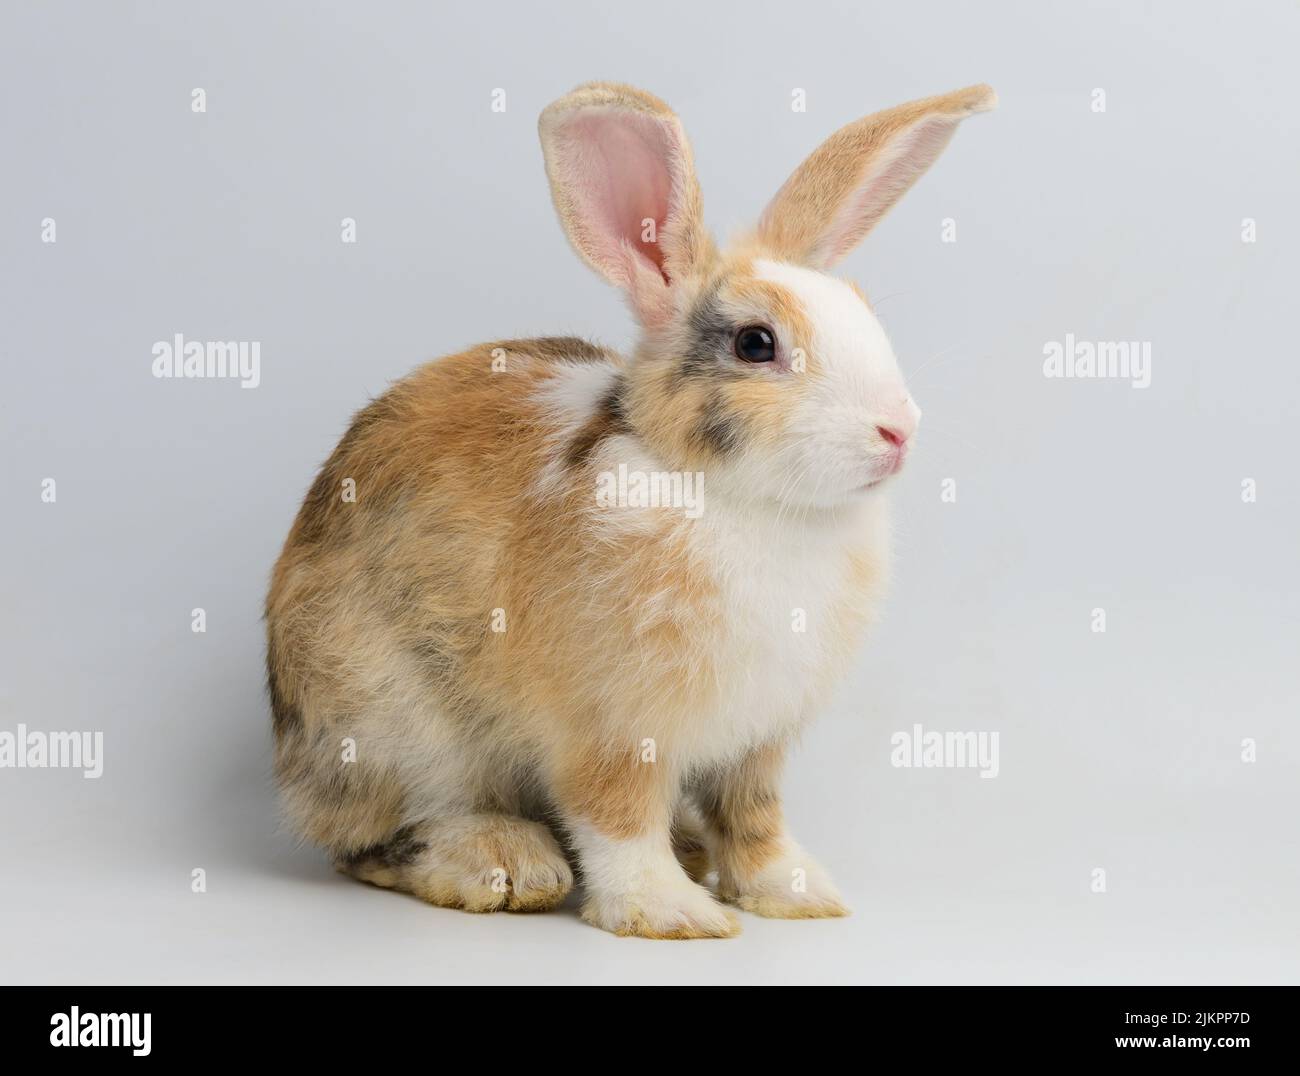 One orange rabbit on white background Stock Photo